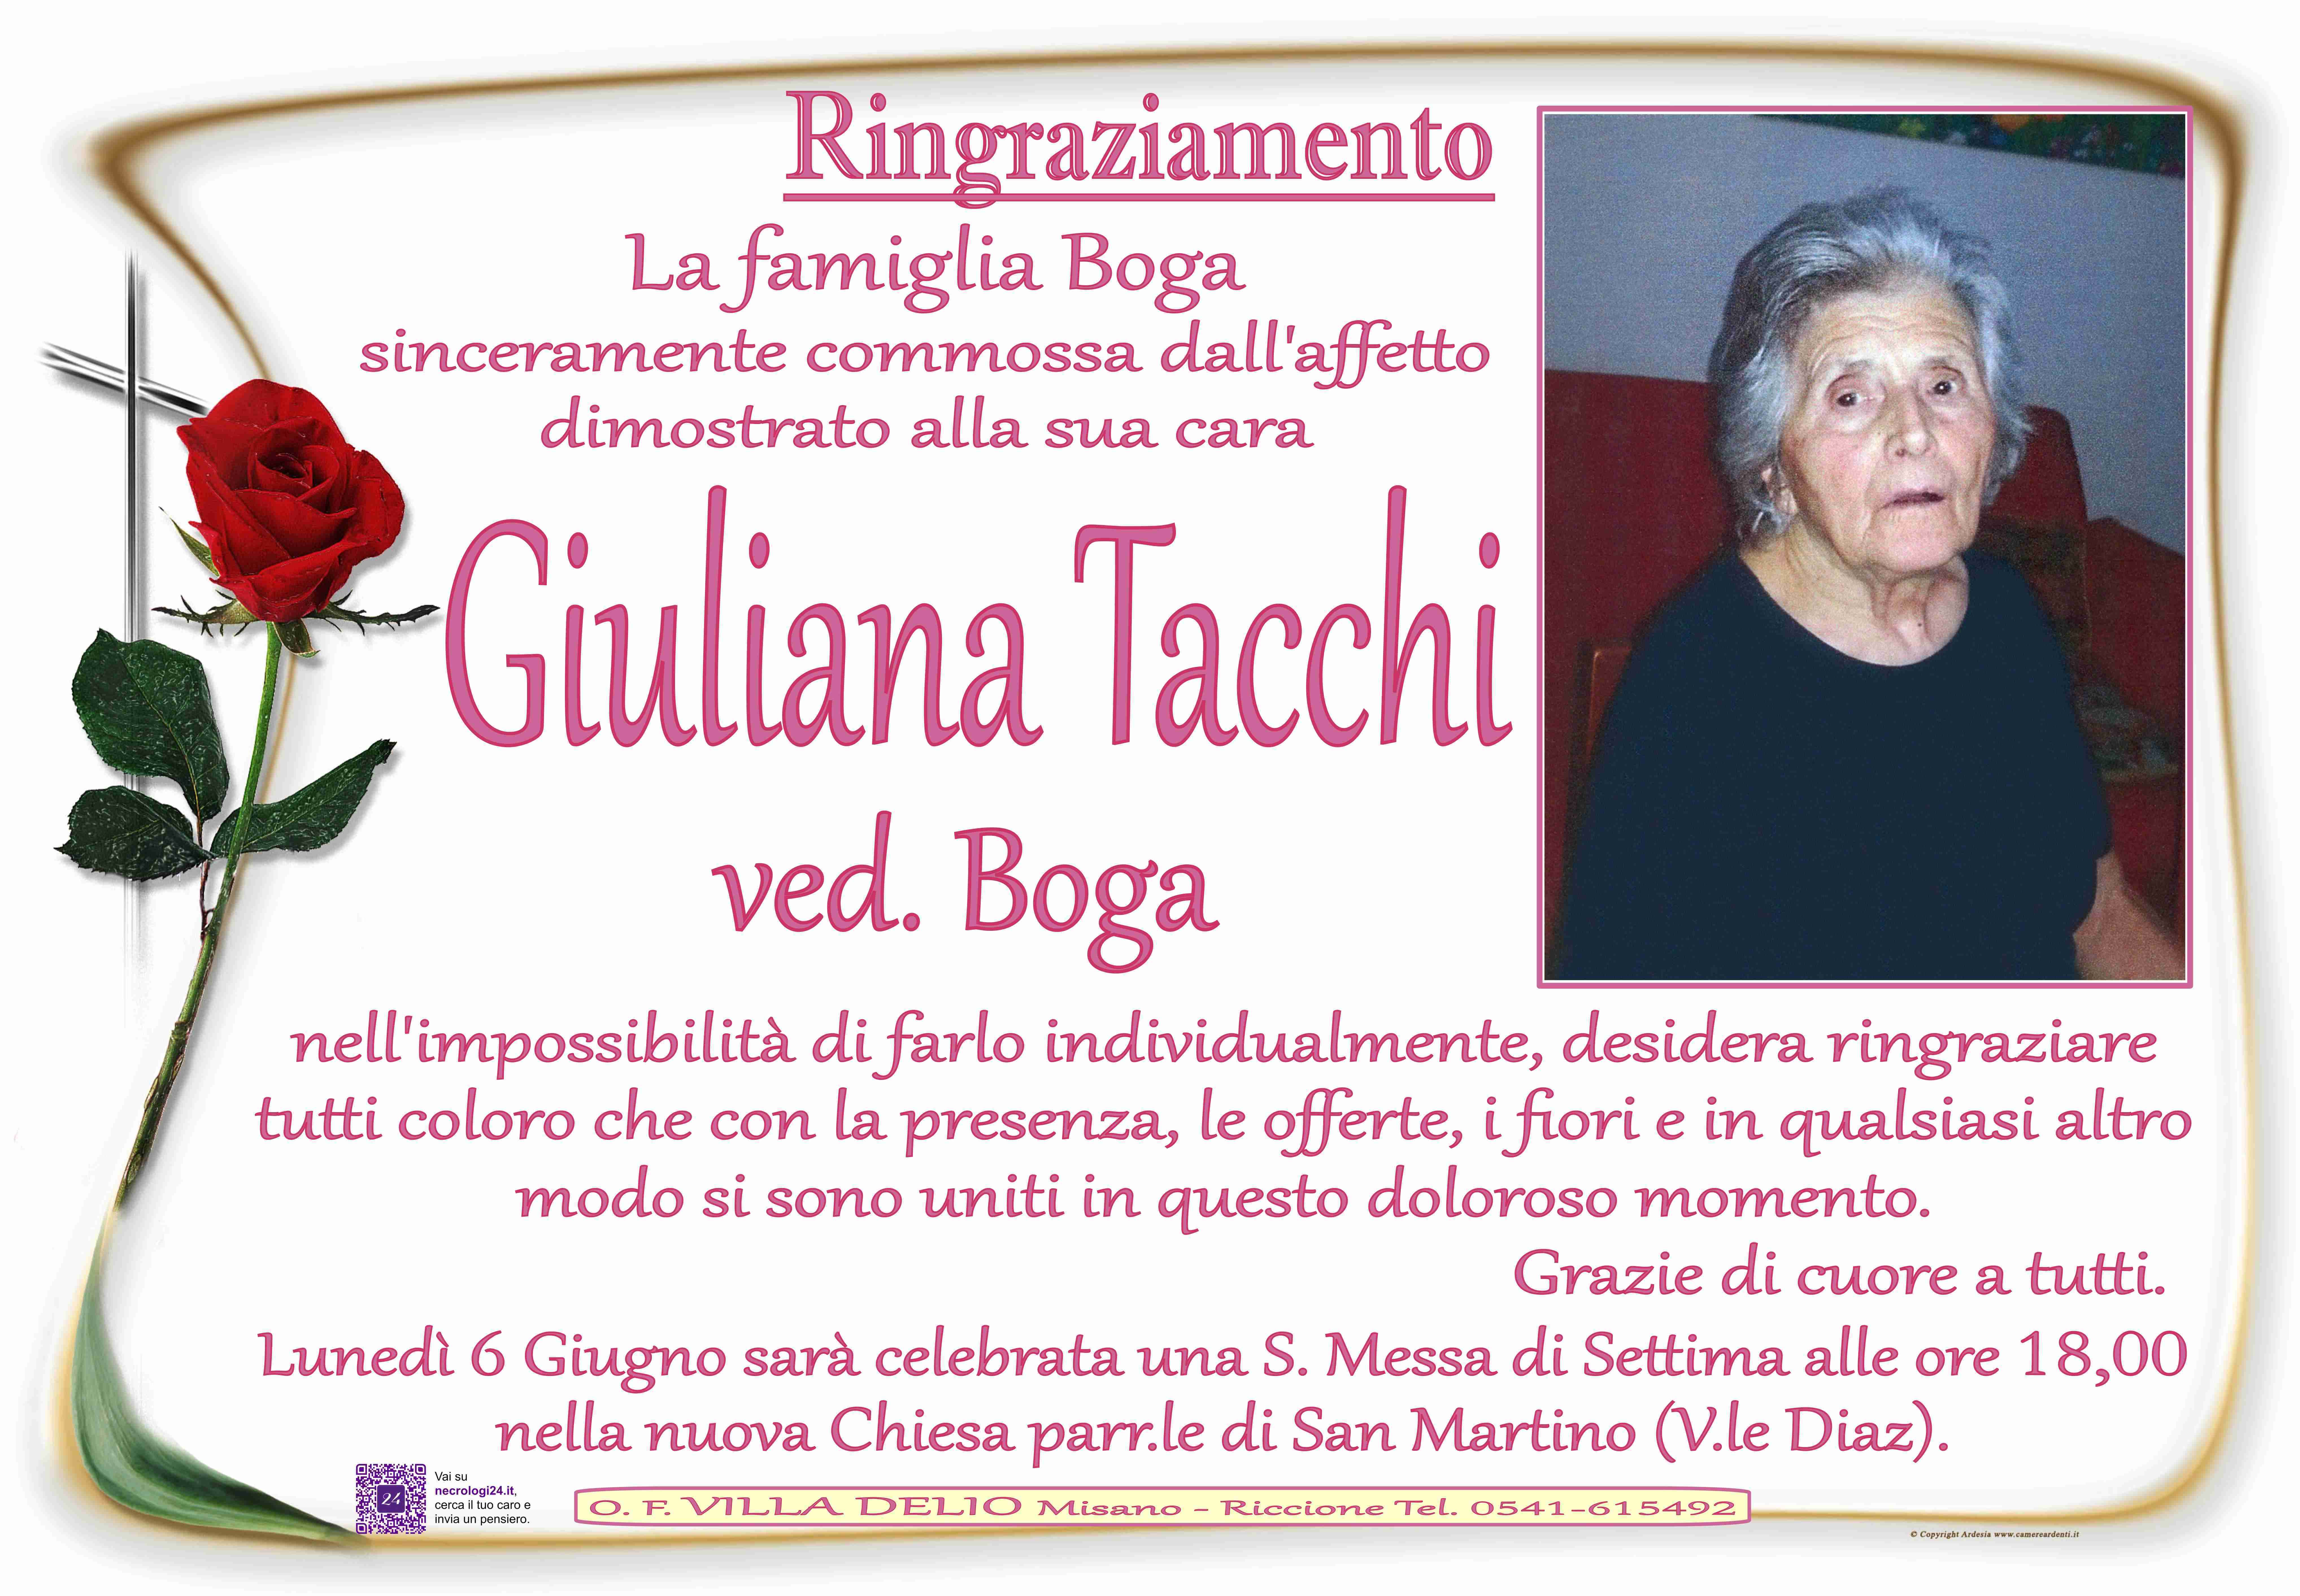 Giuliana Tacchi